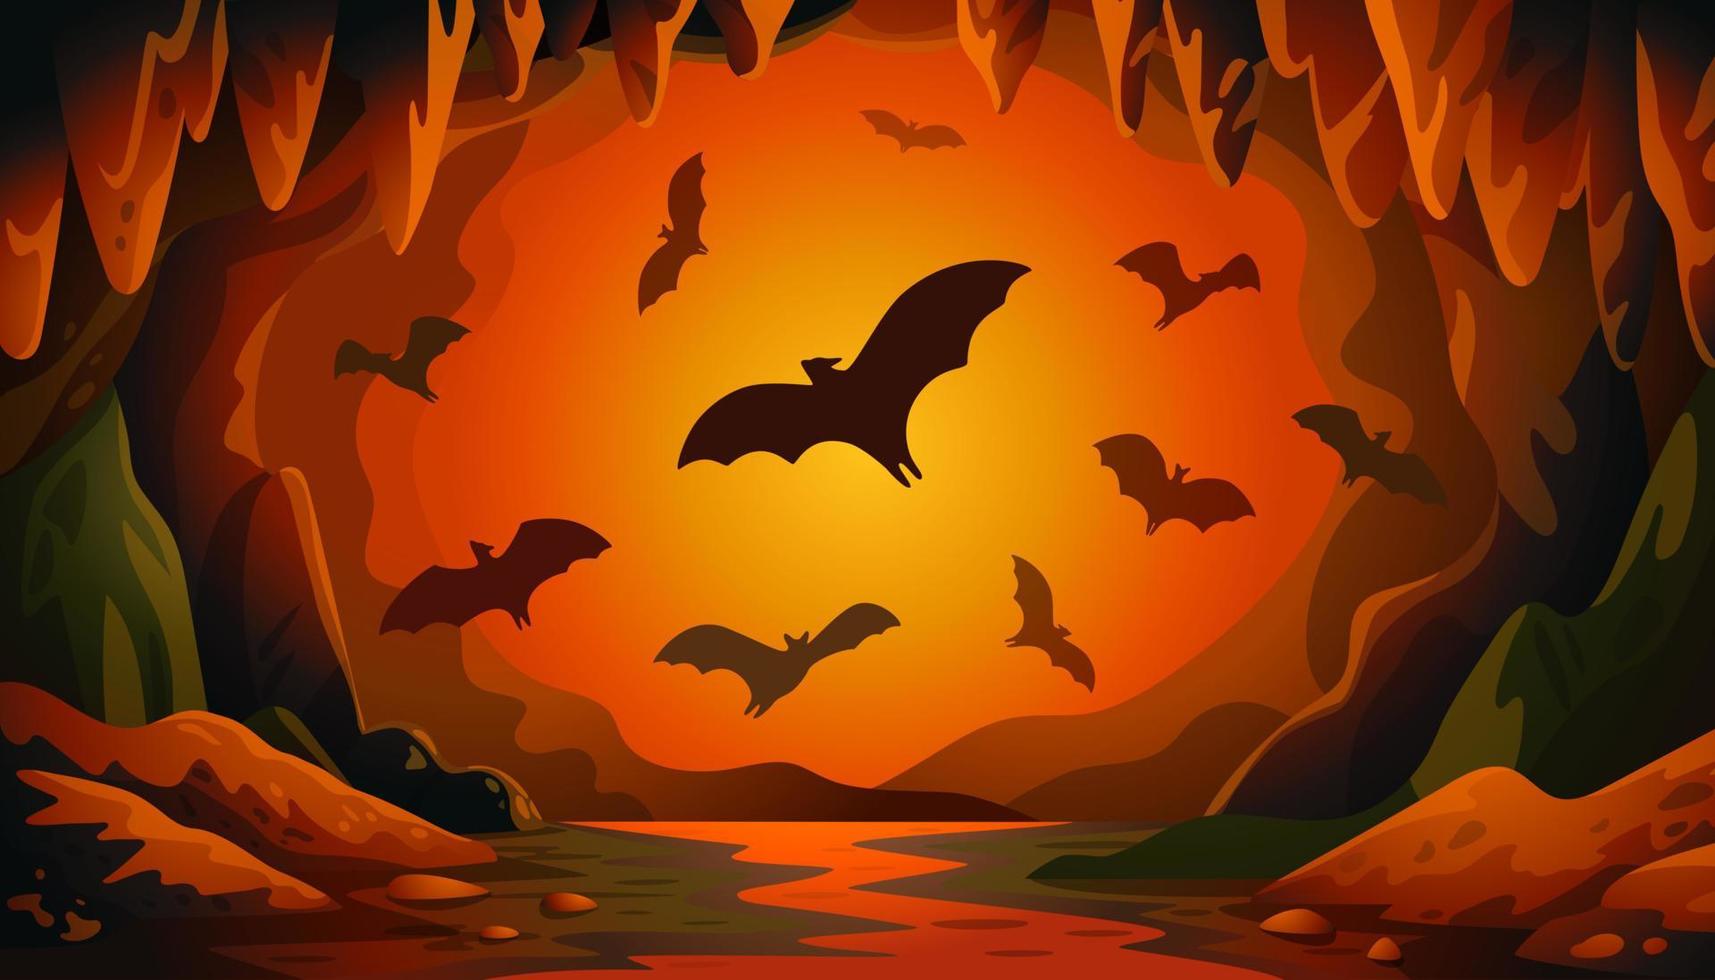 cueva con murciélagos al atardecer. paisaje vectorial panorámico con murciélagos voladores y luz de fuego roja. ilustración vectorial en estilo de dibujos animados planos. vector